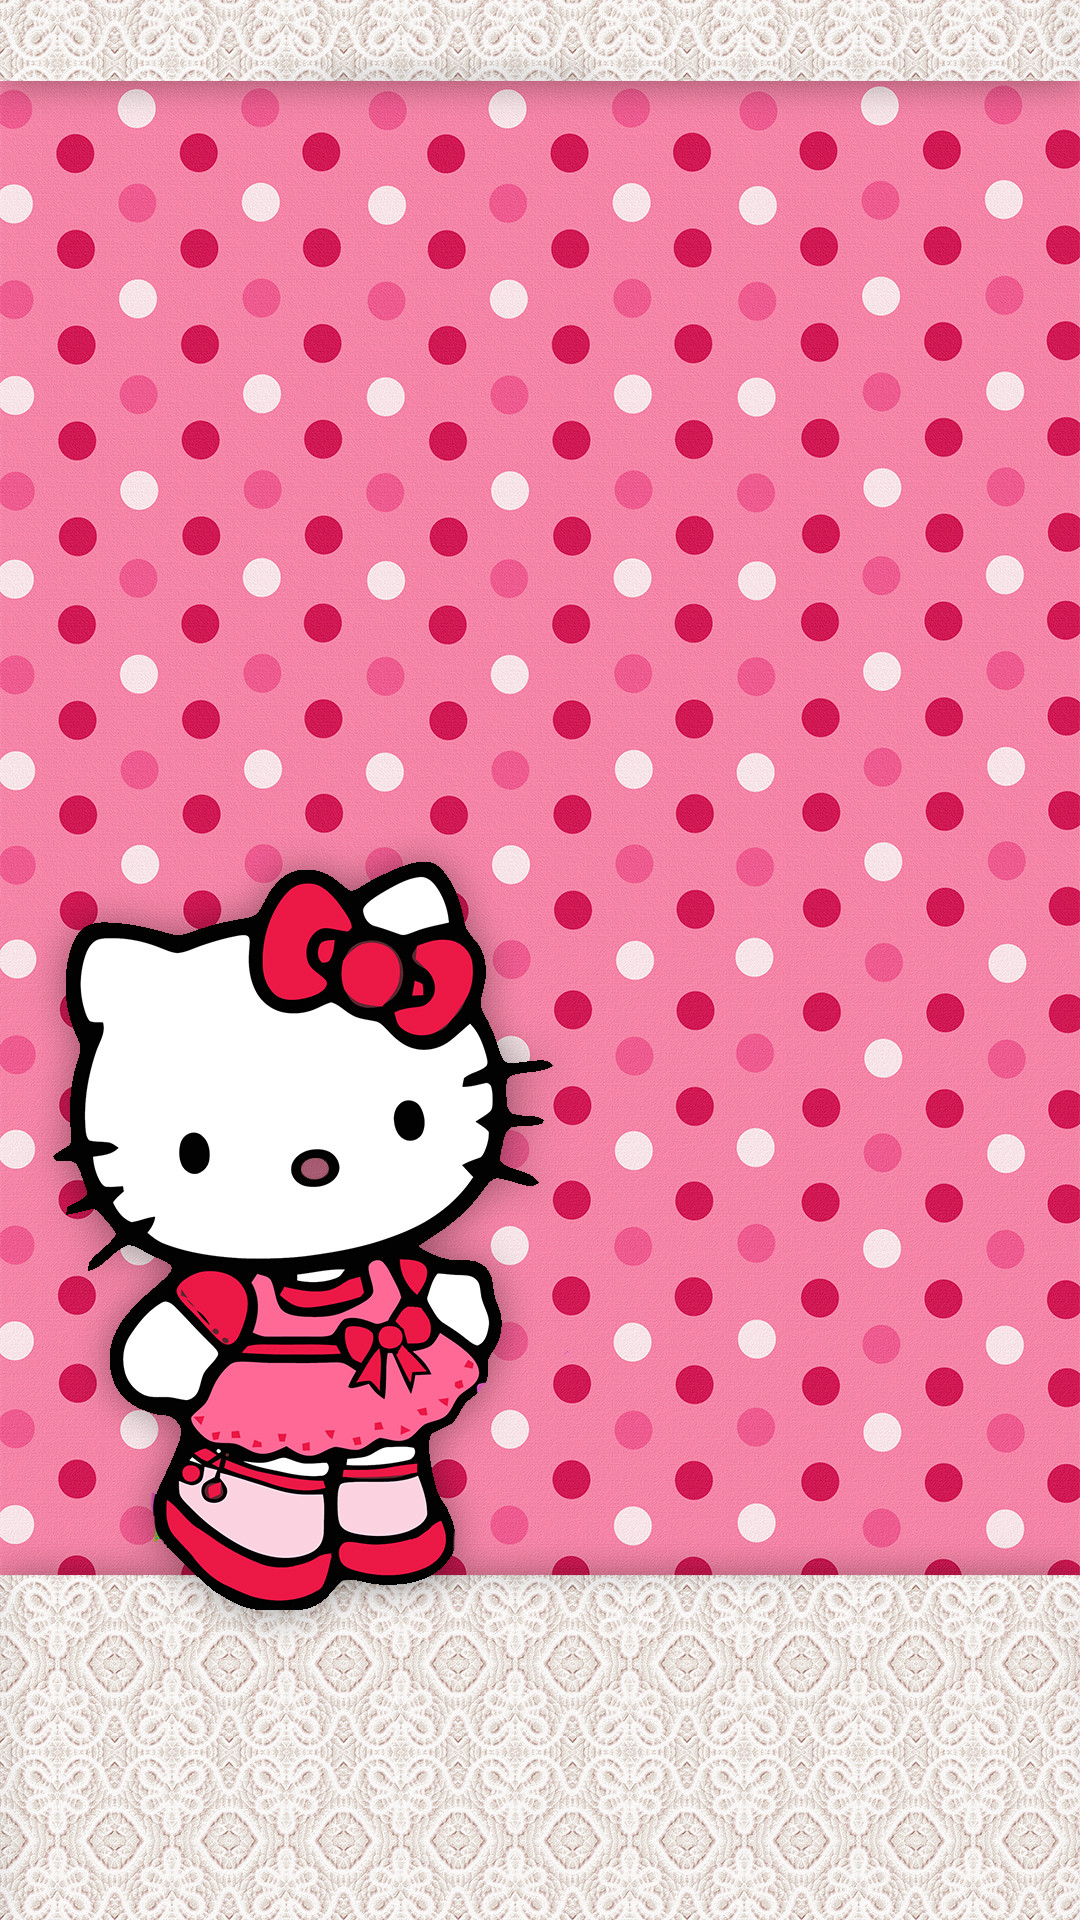 1080x1920 HK-.jpg 1,080Ã1,920 pixels. Hello Kitty WallpaperPhone ...